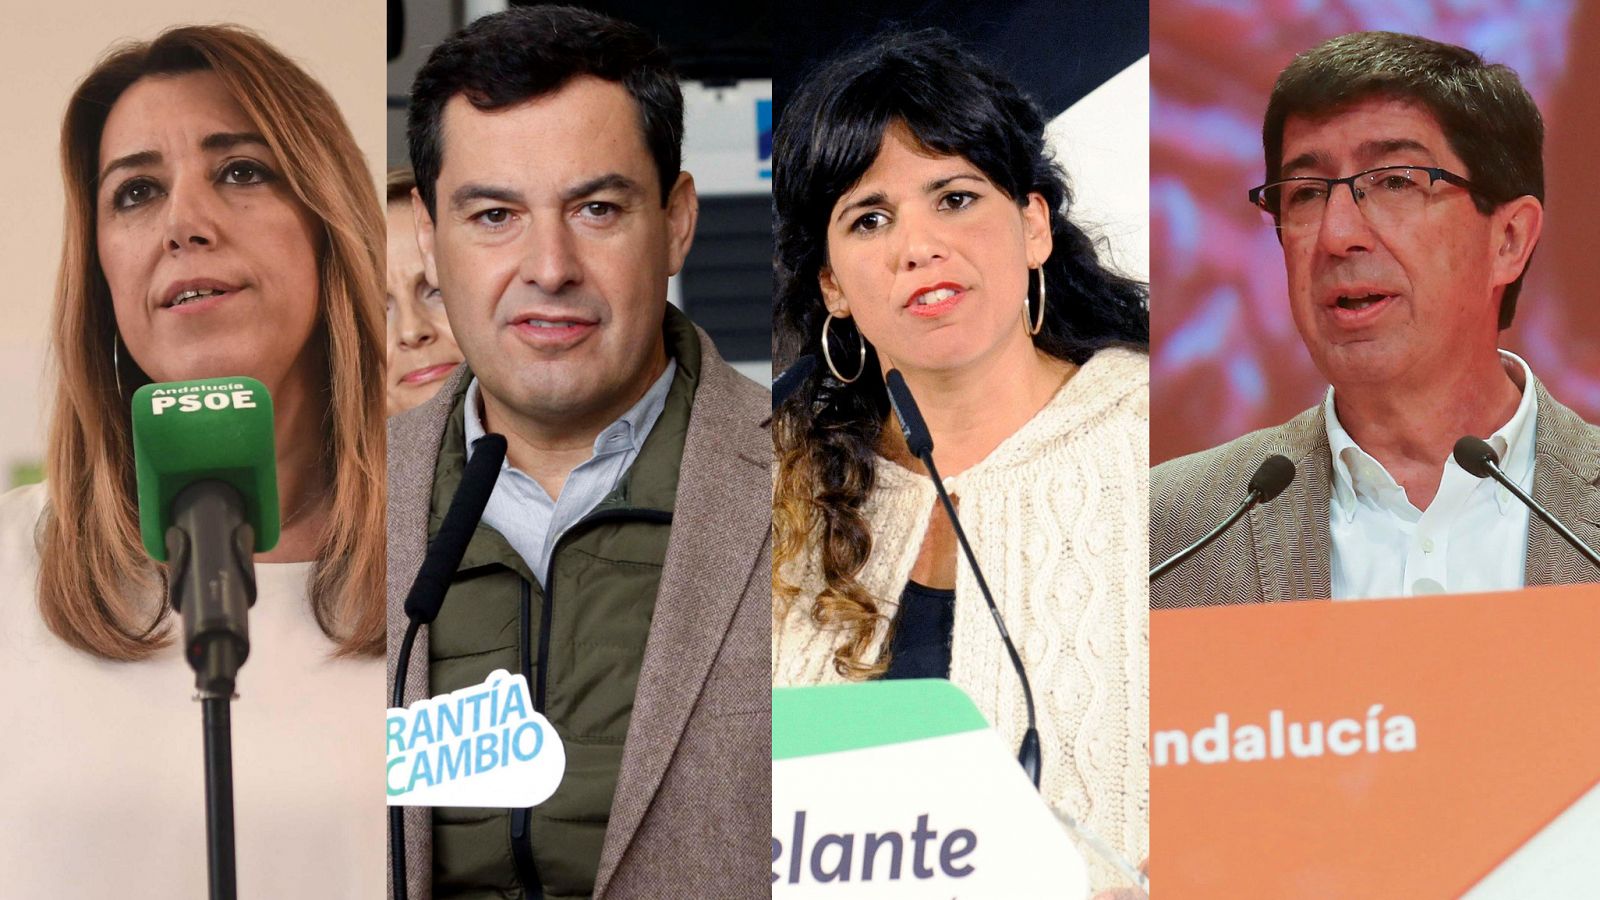 Candidatos elecciones Andalucía